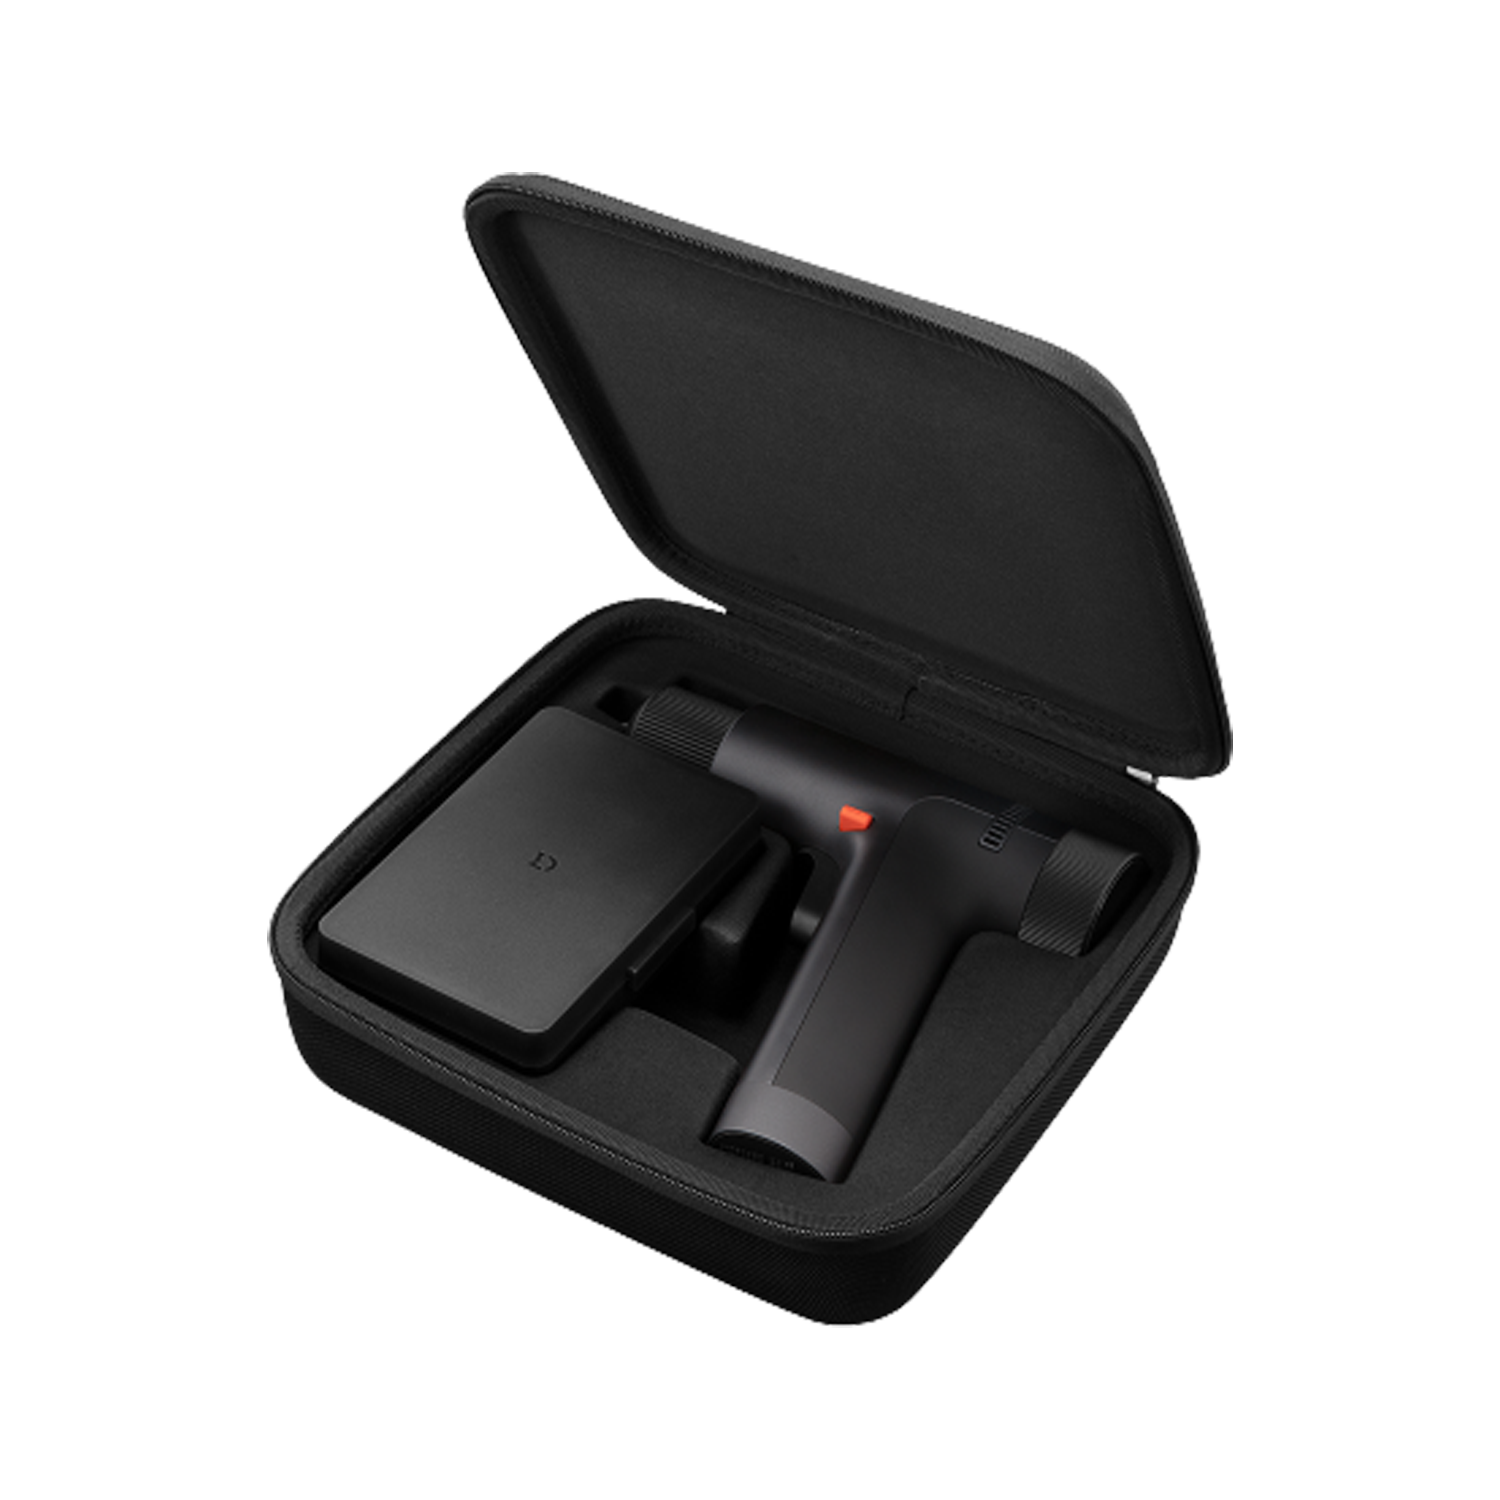 Furadeira Xiaomi 12V Max Brushless Cordless Drill BHR5510GL - Preto